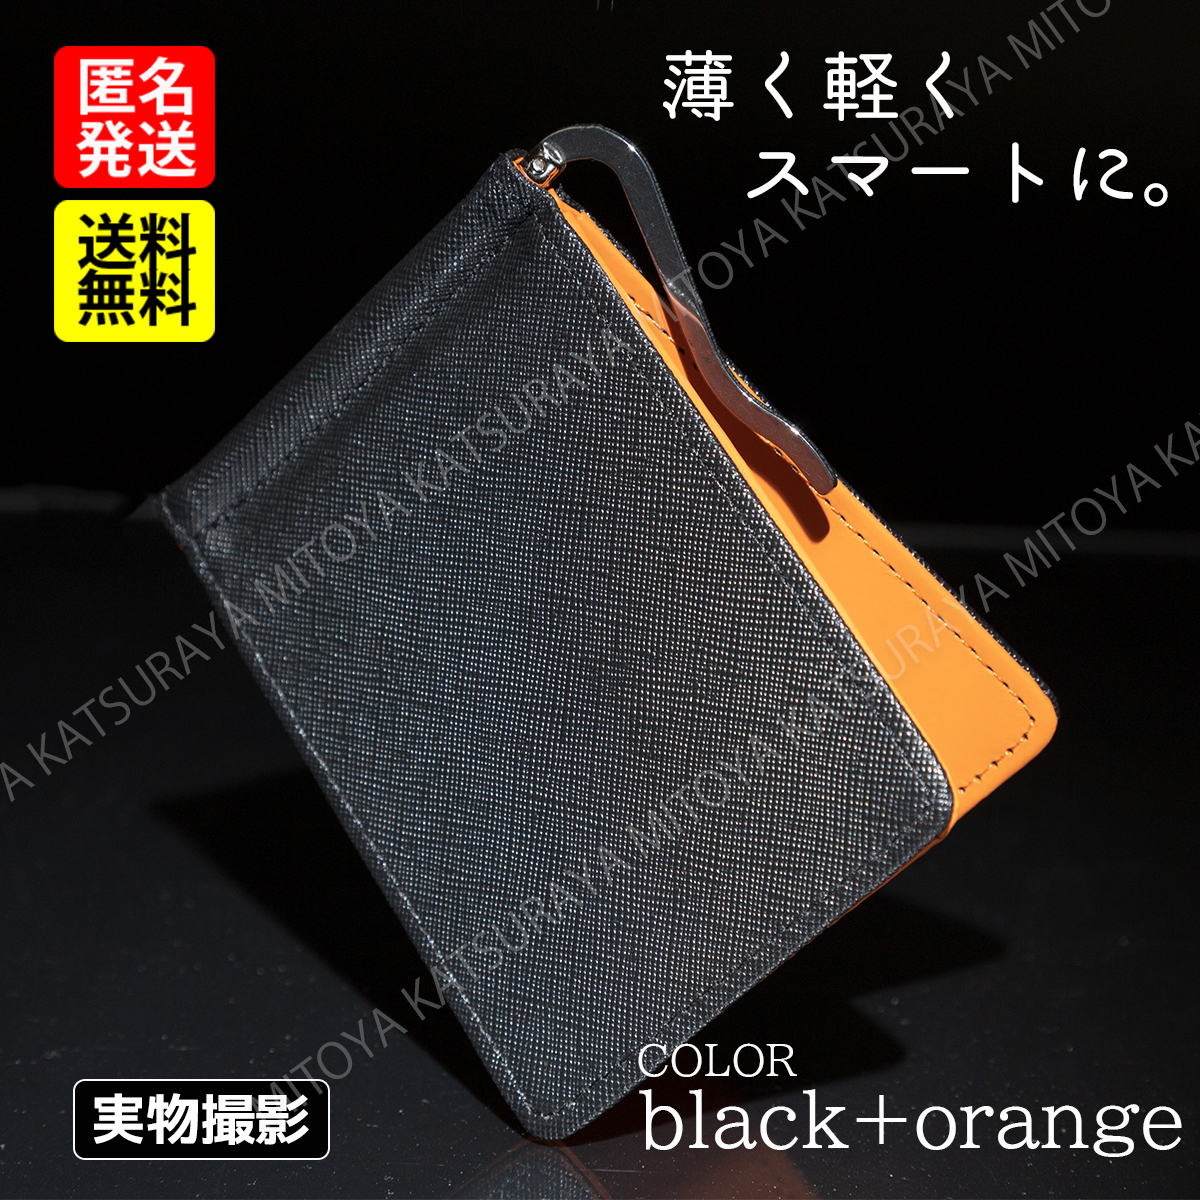 マネークリップ財布 黒+オレンジ メンズ二つ折財布 軽い財布 薄い財布 メンズ キャッシュレス ミニマリスト レザー_画像1